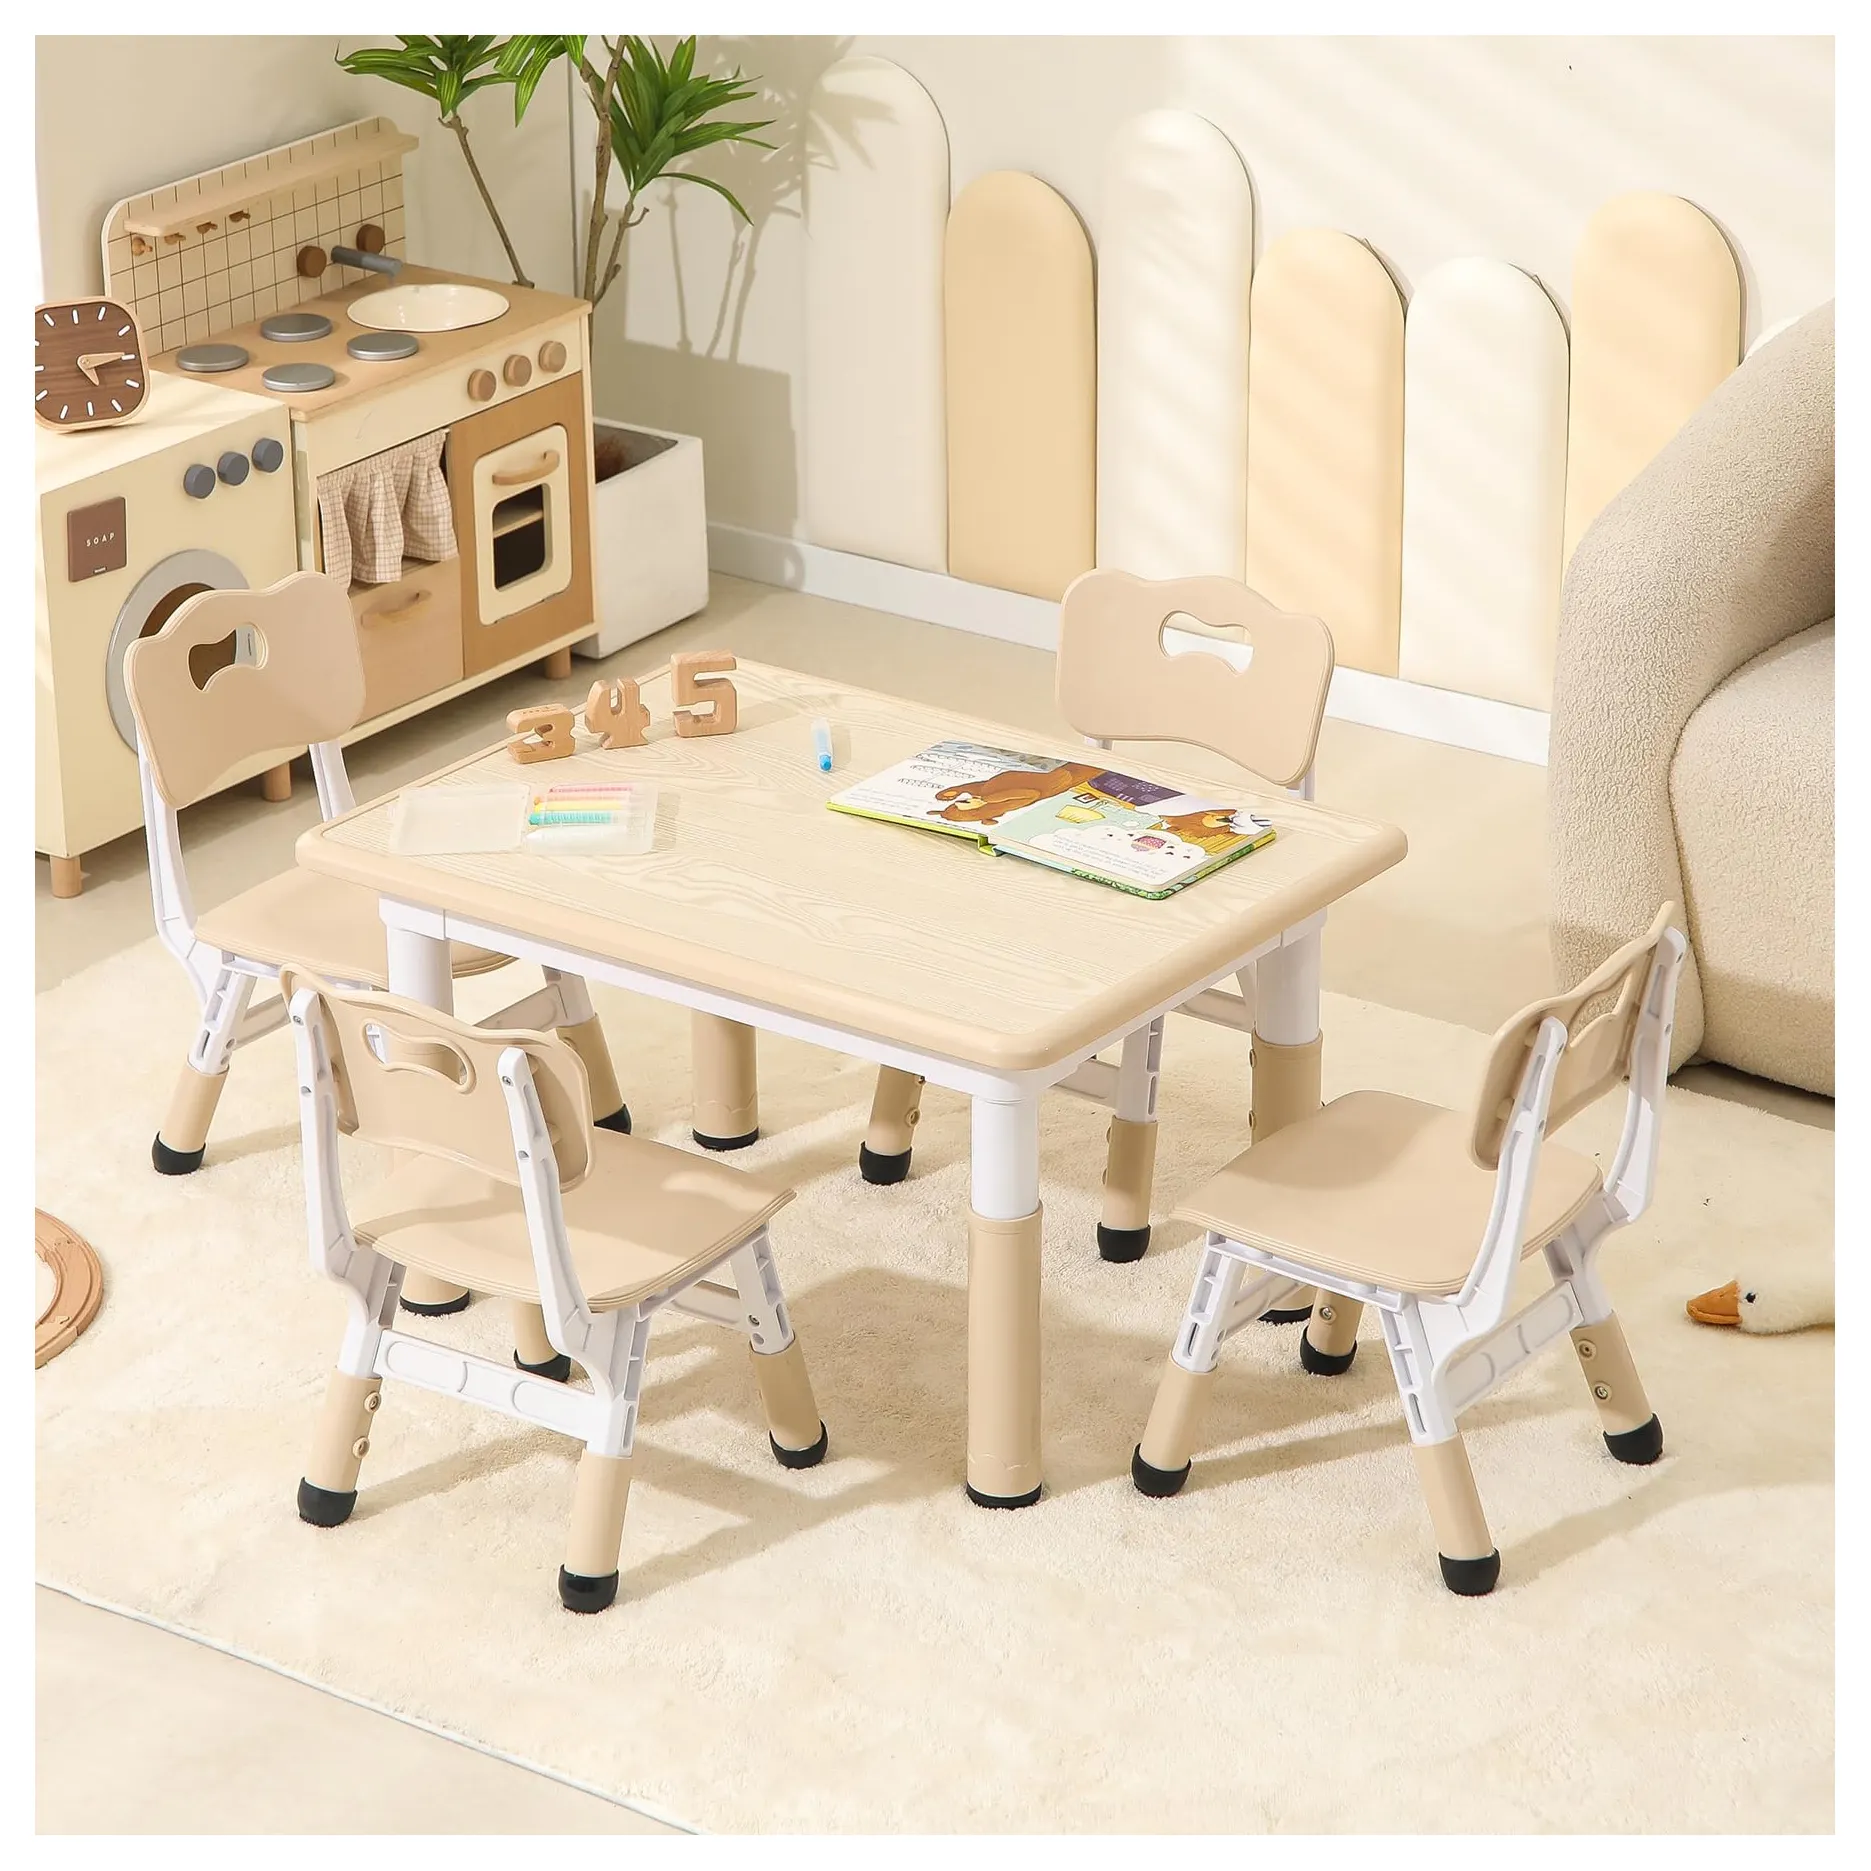 Mesa e cadeiras infantis, mesa e cadeiras para crianças, mesa de graffiti infantil, conjunto de mesa e cadeiras para crianças, mesa de estudo e cadeiras para crianças